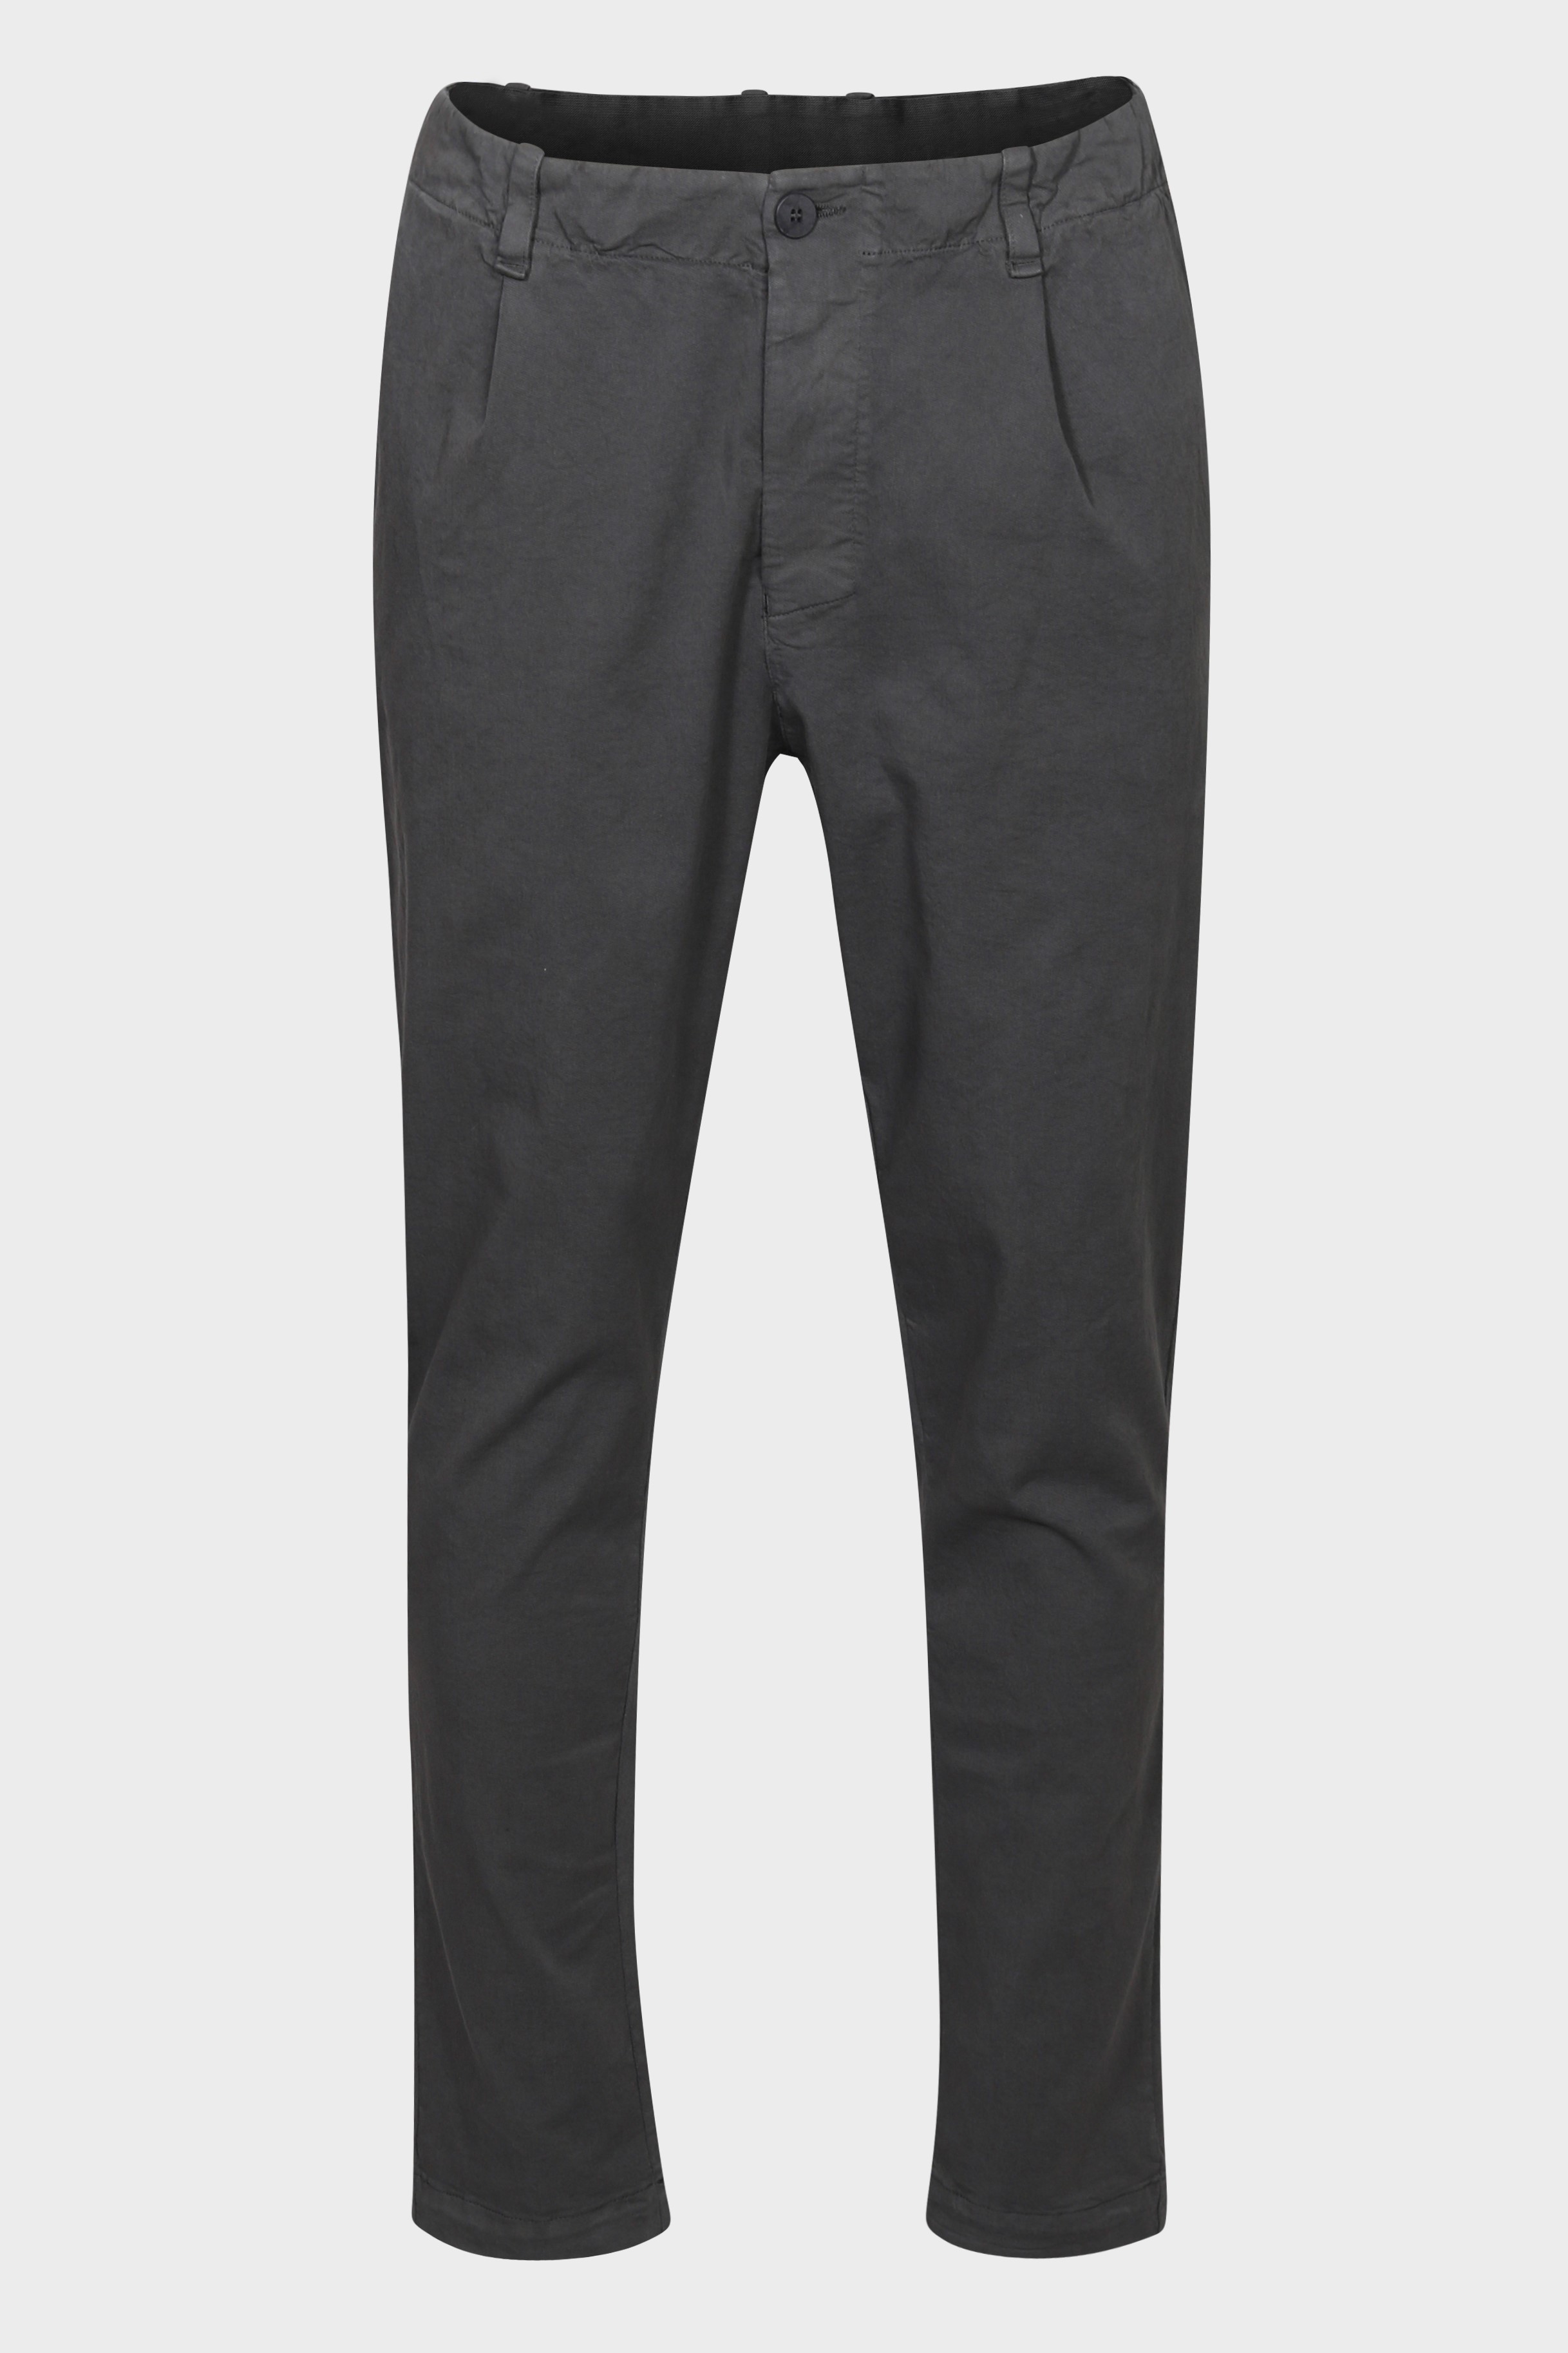 TRANSIT UOMO Cotton Stretch Pant in Grey